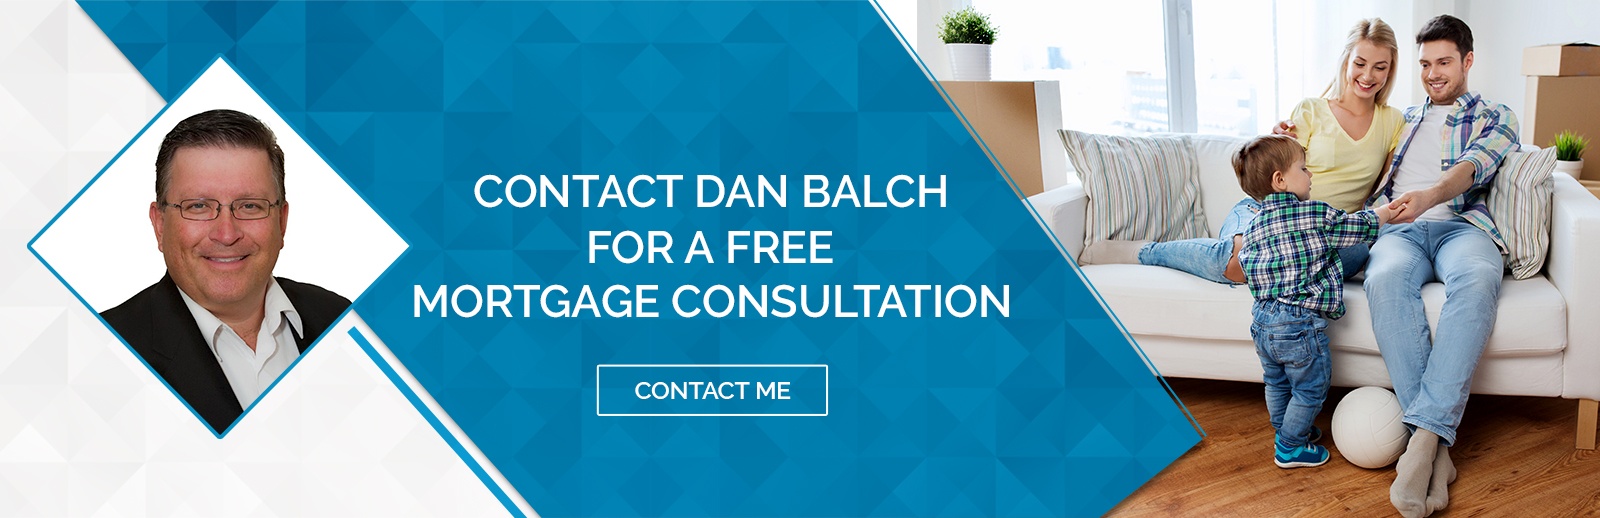 DAN BALCH - Mortgage Broker in London Ontario